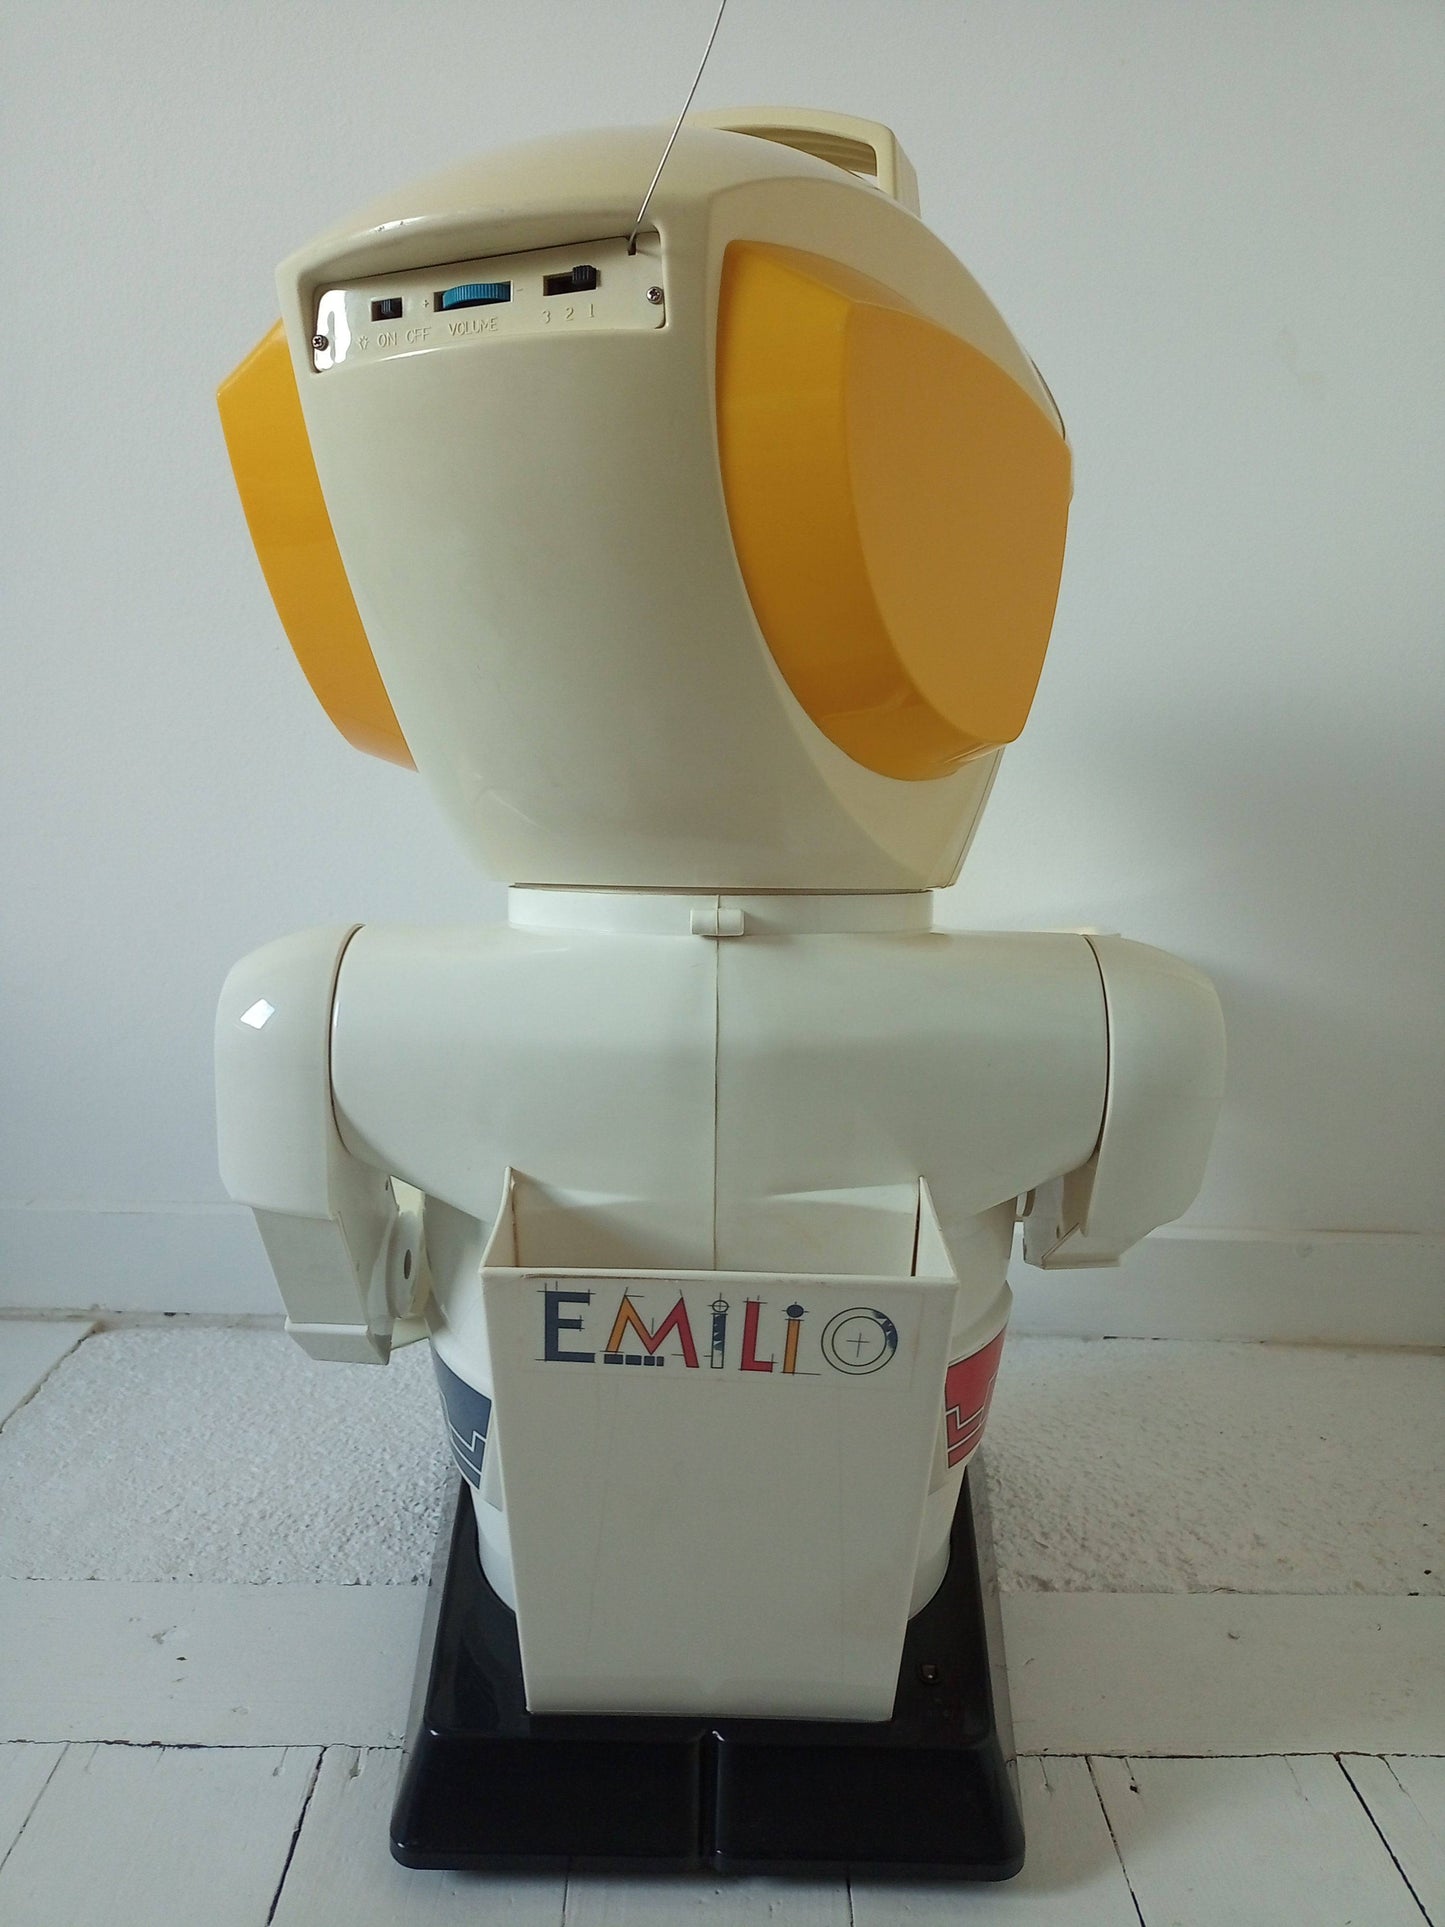 Émilio le robot télécommandé - cetaitmieuxavant